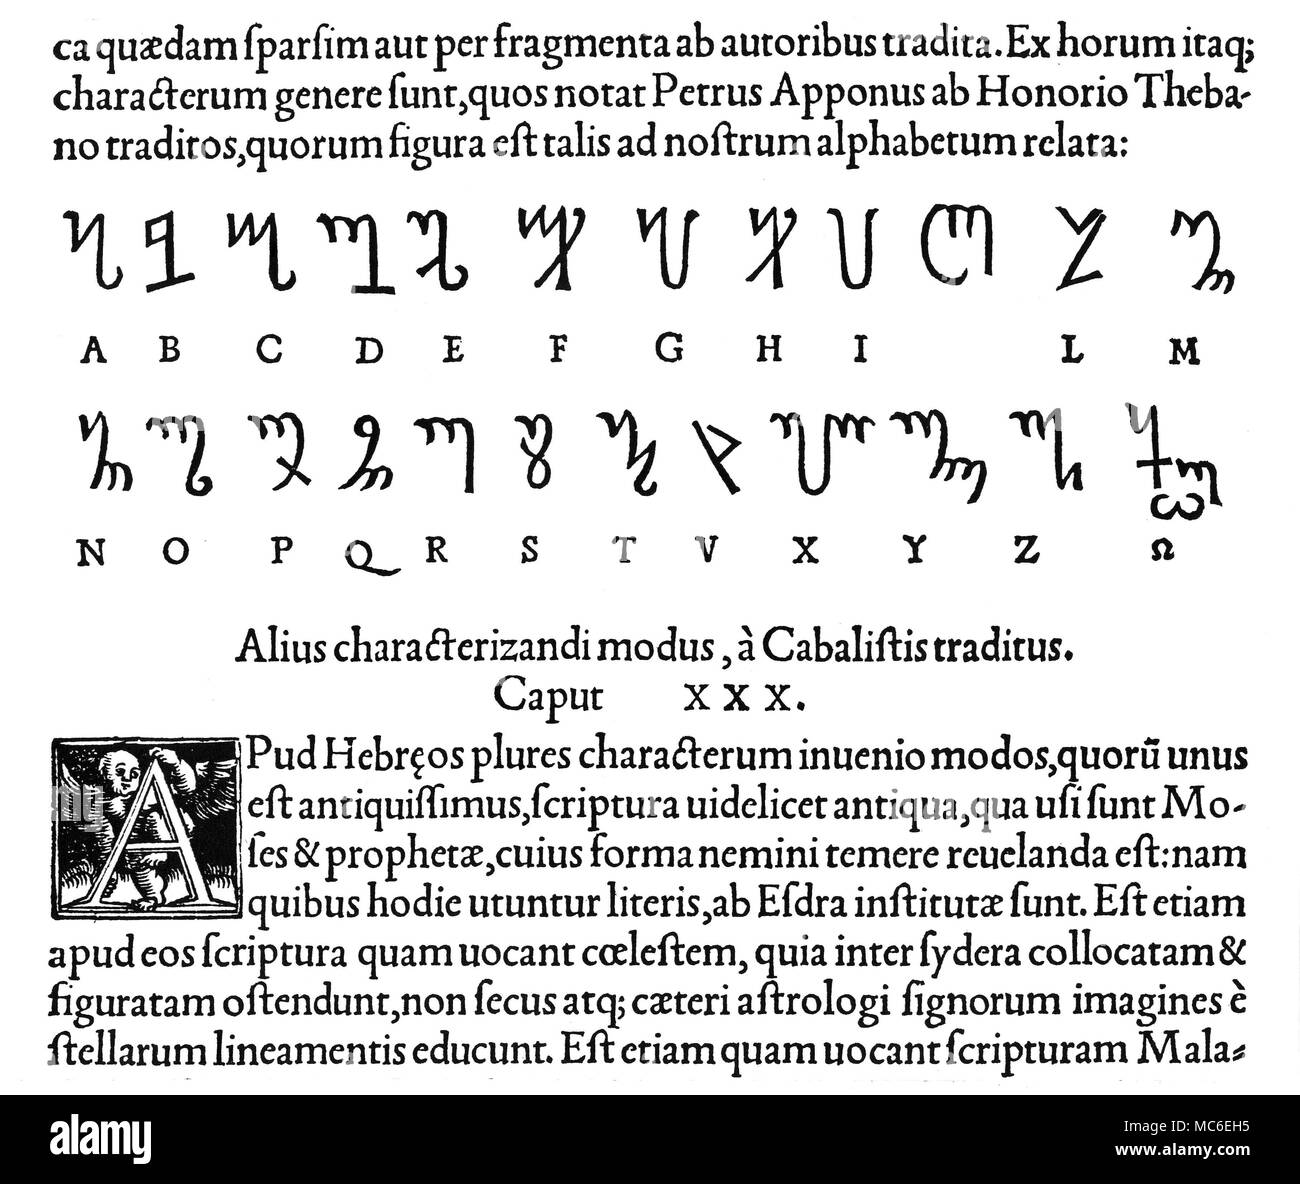 Alfabeti - alfabeti magico tra gli antichi alfabeti magici registrati dal XVI secolo occultista Agrippa, è il 'Theban Script'. Da Cornelius Agrippa, De occulta philosophia, edizione 1533. Foto Stock